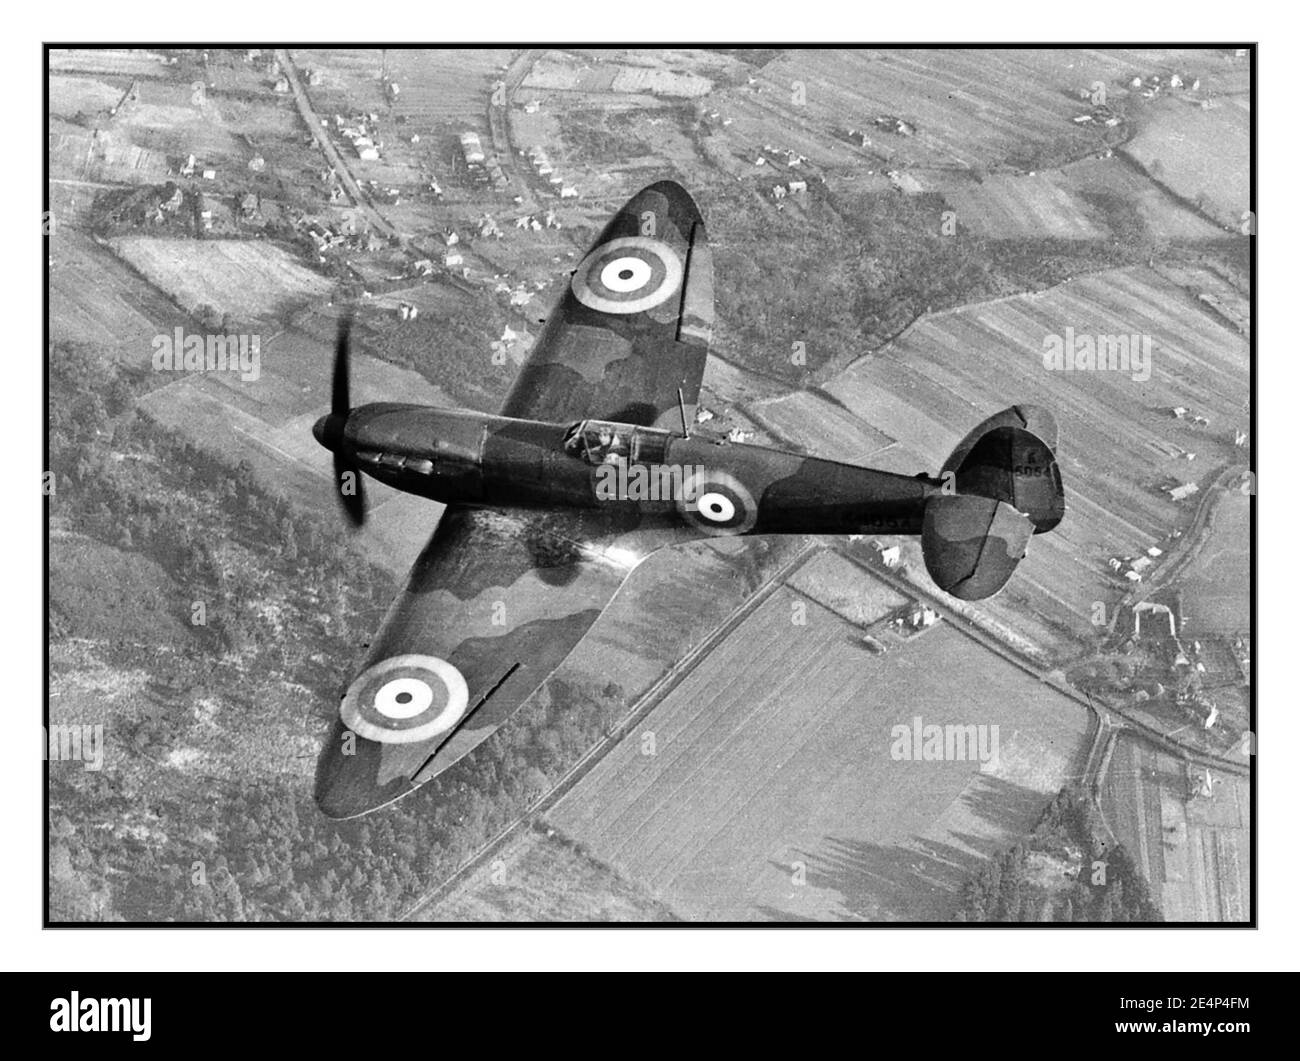 SPITFIRE della seconda guerra mondiale sull'Inghilterra il Supermarine Spitfire della RAF era un aereo da combattimento britannico a una sede usato dalla Royal Air Force e da altri paesi alleati prima, durante e dopo la seconda guerra mondiale Molte varianti dello Spitfire sono state costruite utilizzando diverse configurazioni alari ed è stato prodotto in numero maggiore di qualsiasi altro aeromobile britannico. Fu un iconico aereo da combattimento che contribuì a vincere la Battaglia di Gran Bretagna Foto Stock